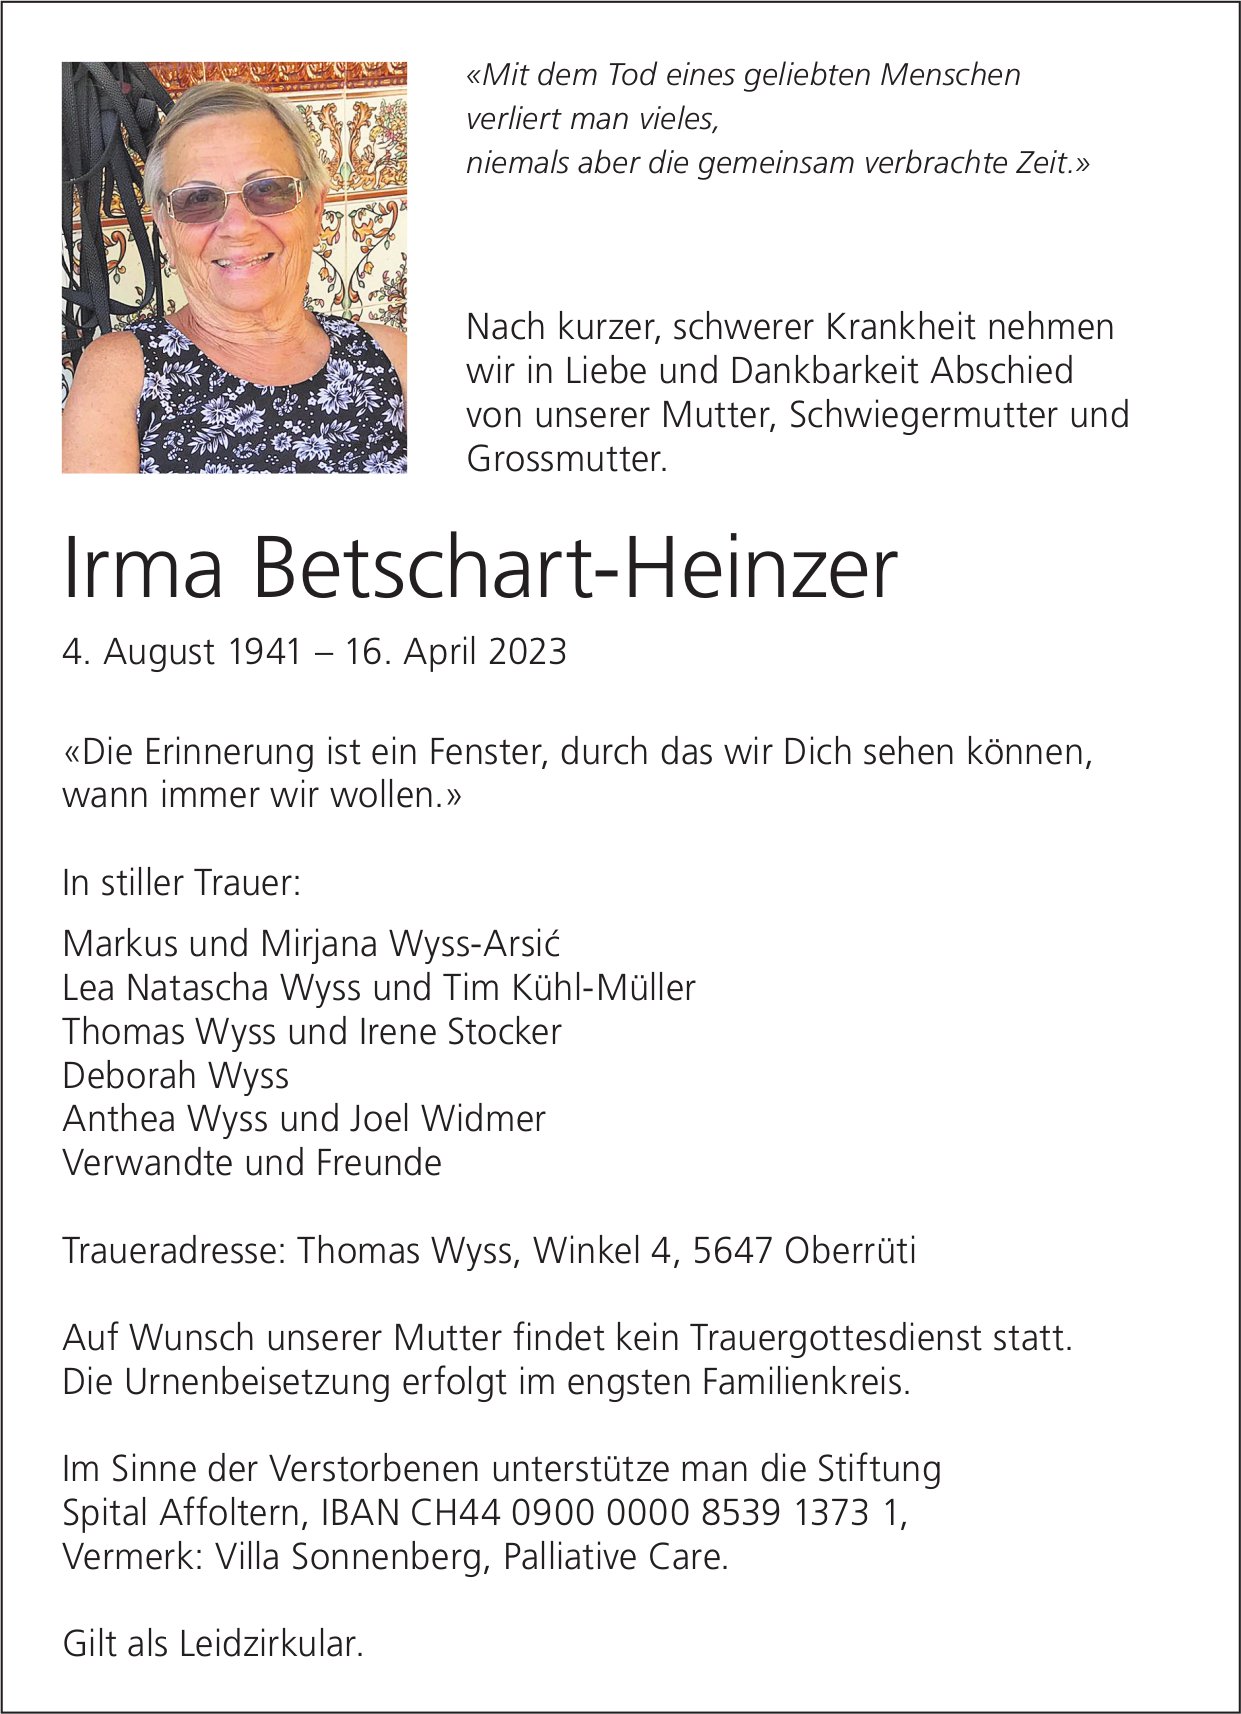 Betschart-Heinzer Irma, April 2023 / TA